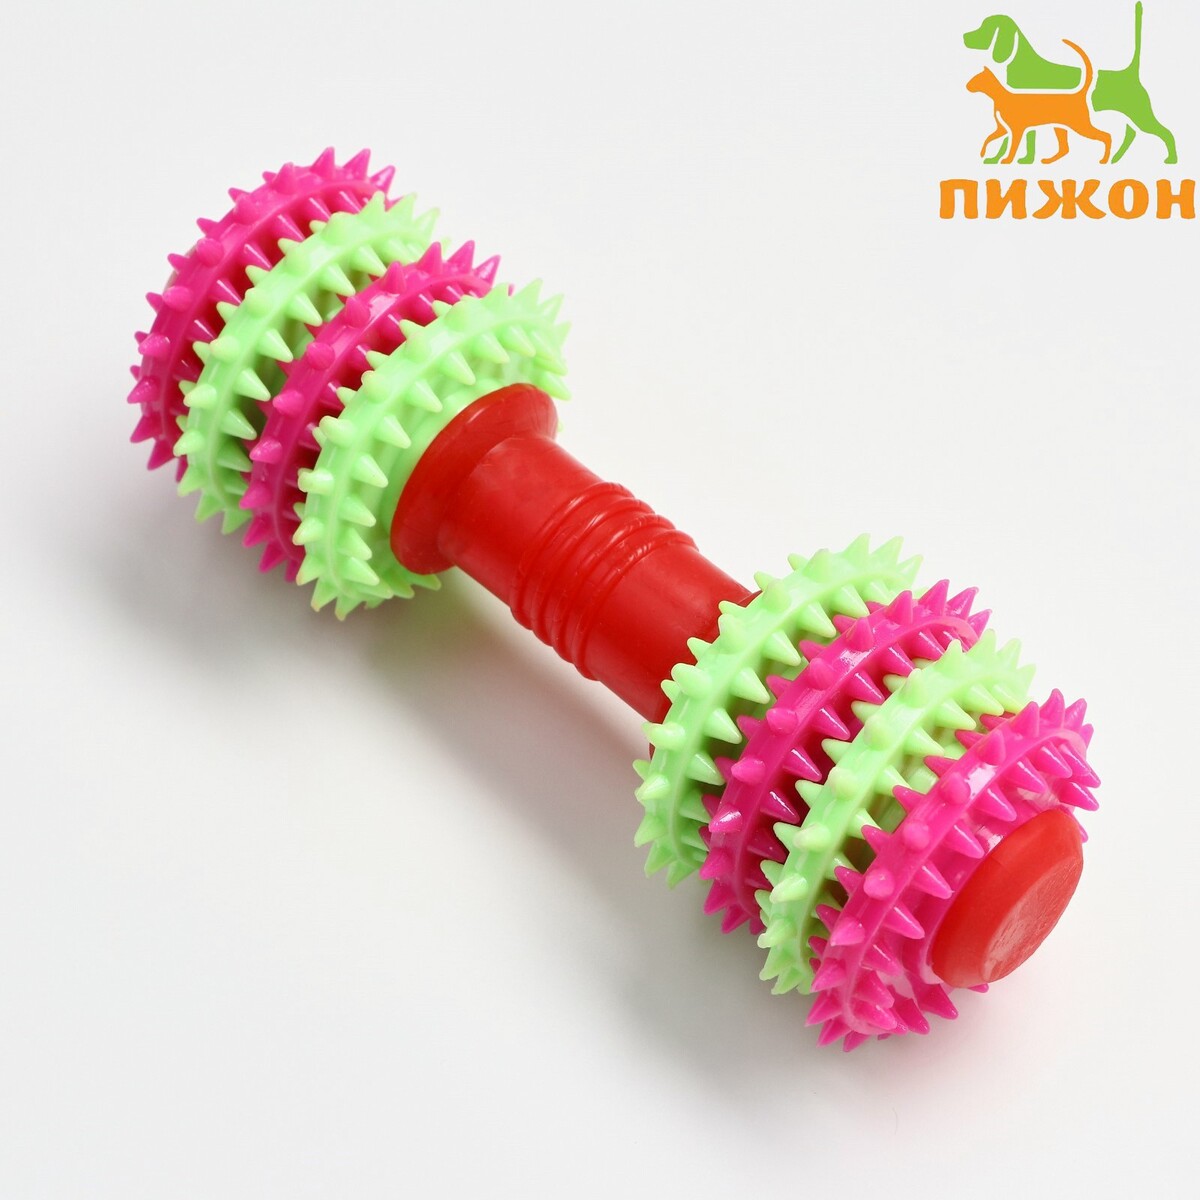 Игрушка жевательная 15,5 х 5,5 см, красная/розовая/зеленая игрушка тренировочная канатная до 30 см 70 г белая зеленая красная